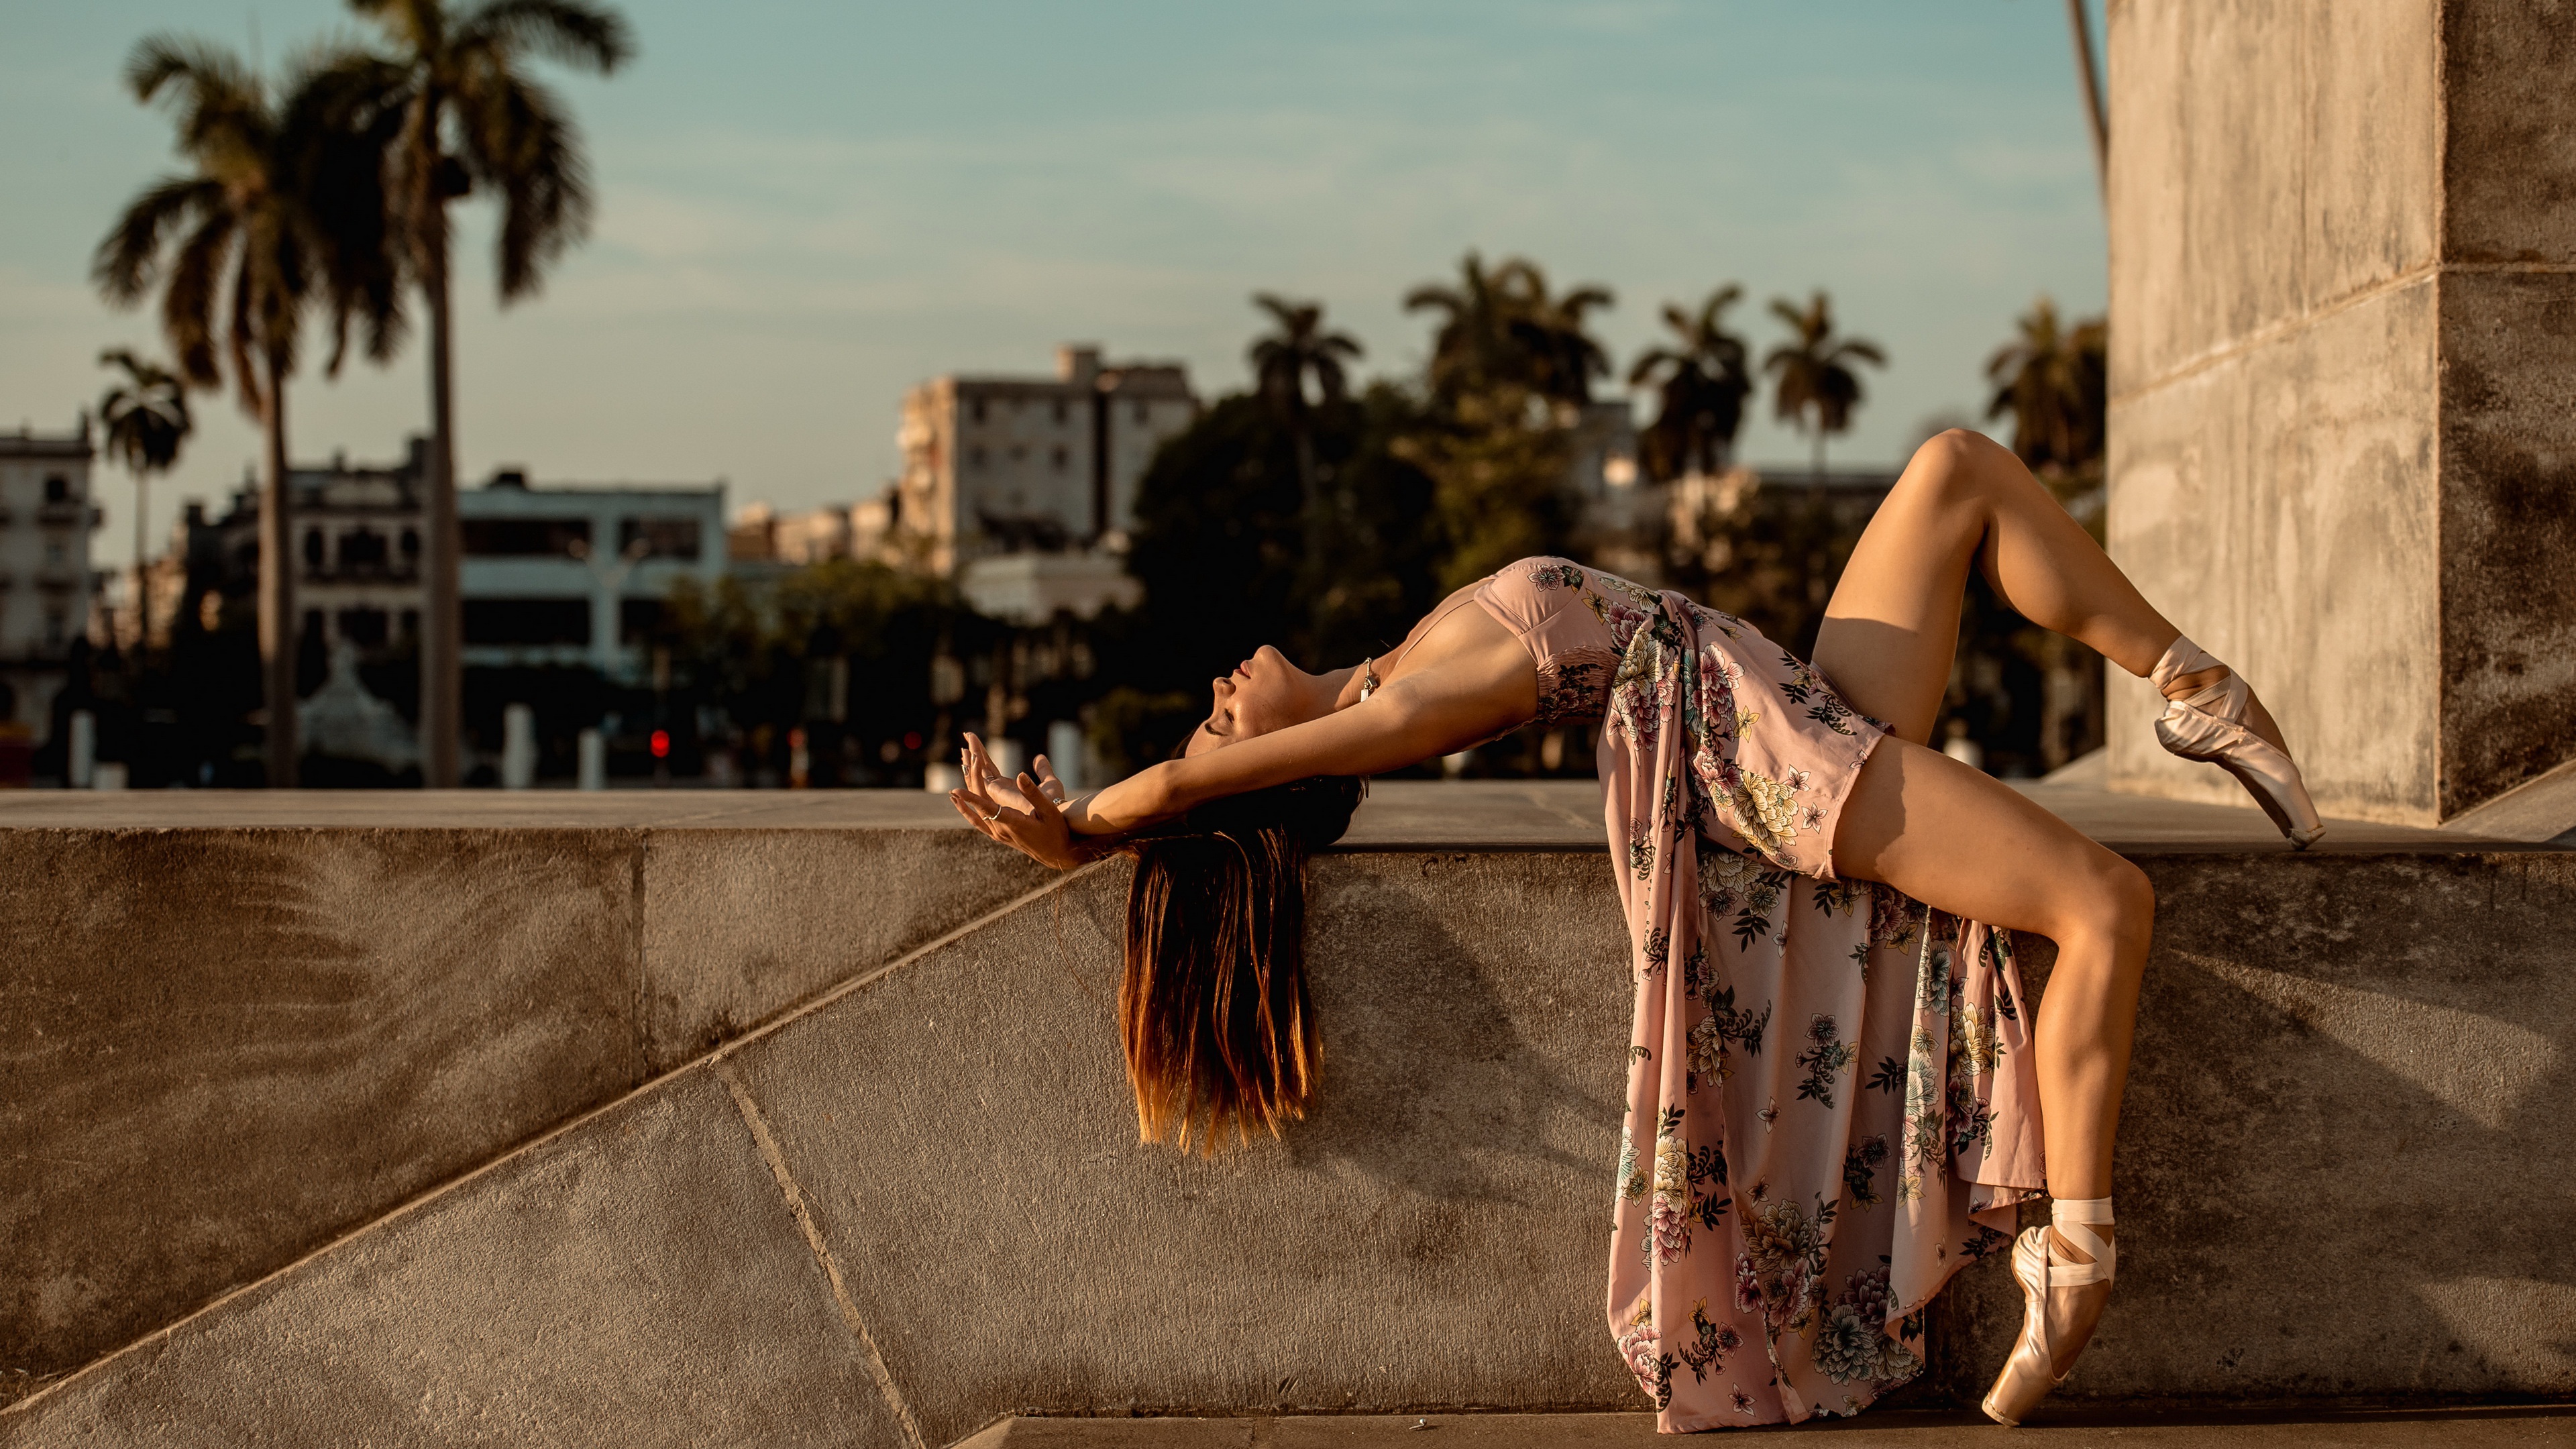 Women Dancer Model Women Outdoors Urban Long Hair Ballet Slippers Legs Brunette Closed Eyes Flower D 3840x2160